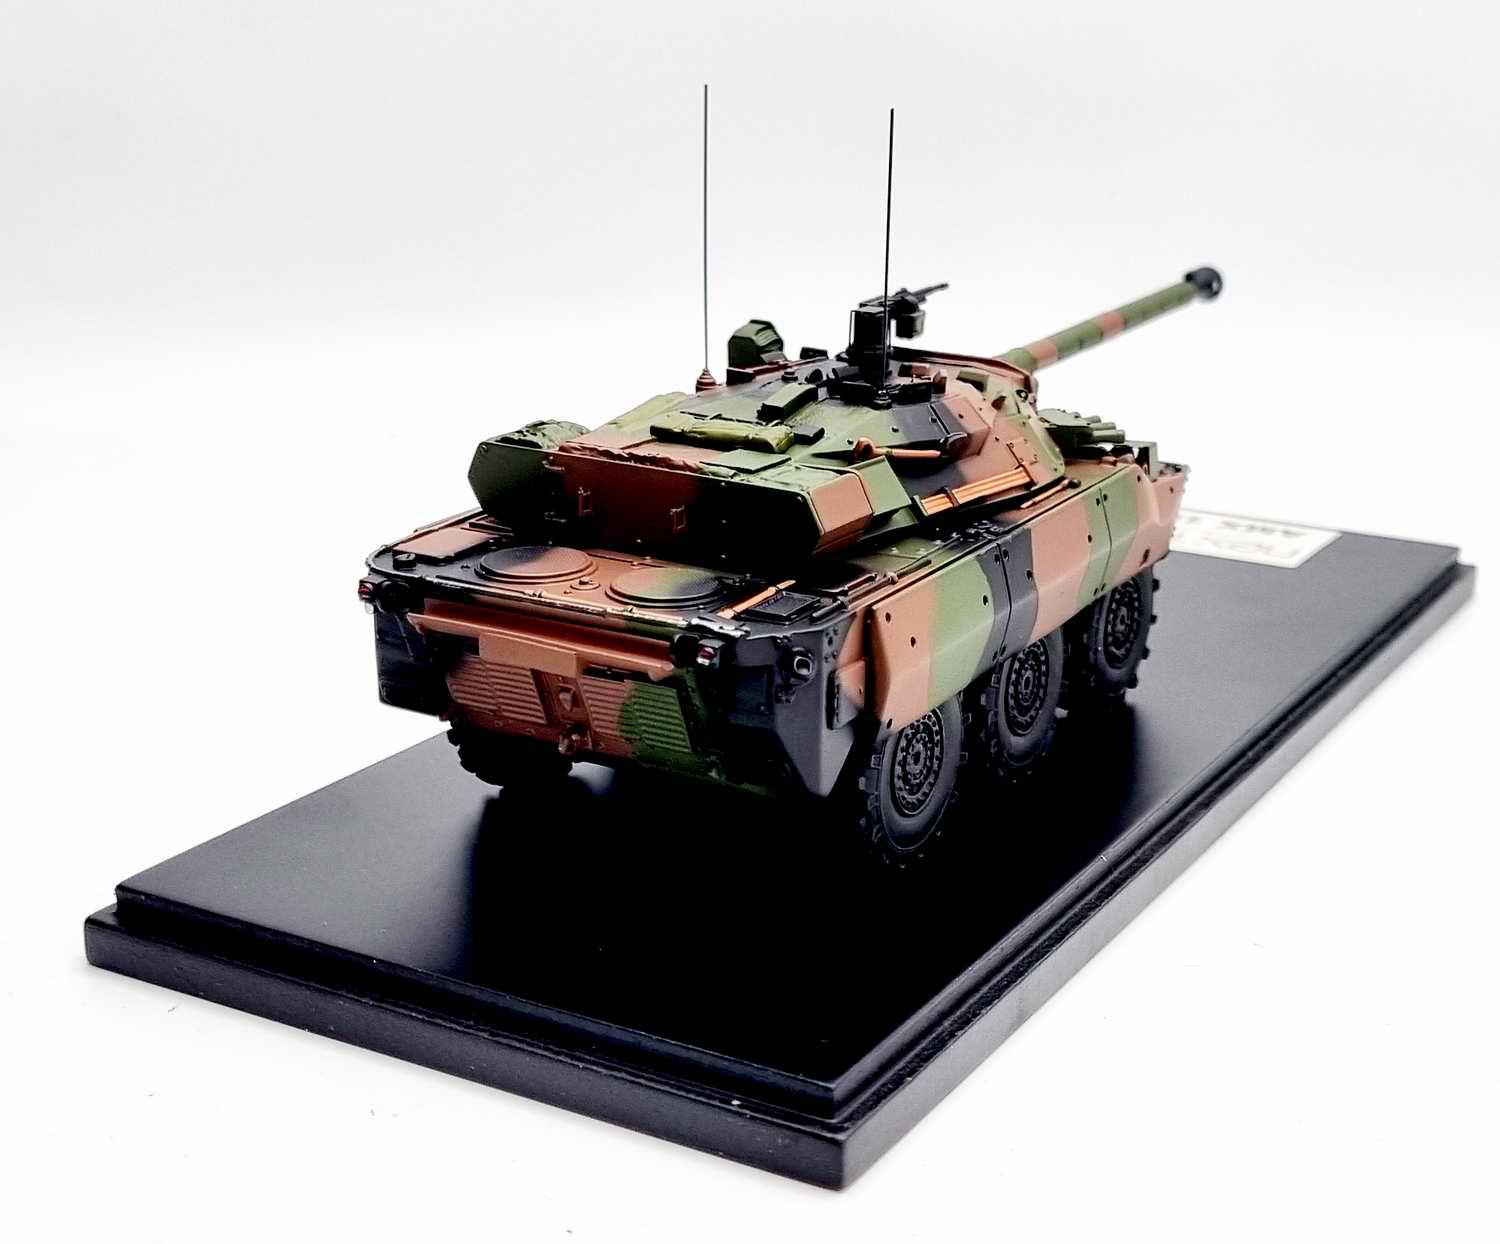 Maquette char roues militaire Nexter AMX-10RCr vert otan camouflage kaki véhicule blindé reconnaissance combat français Armée de Terre